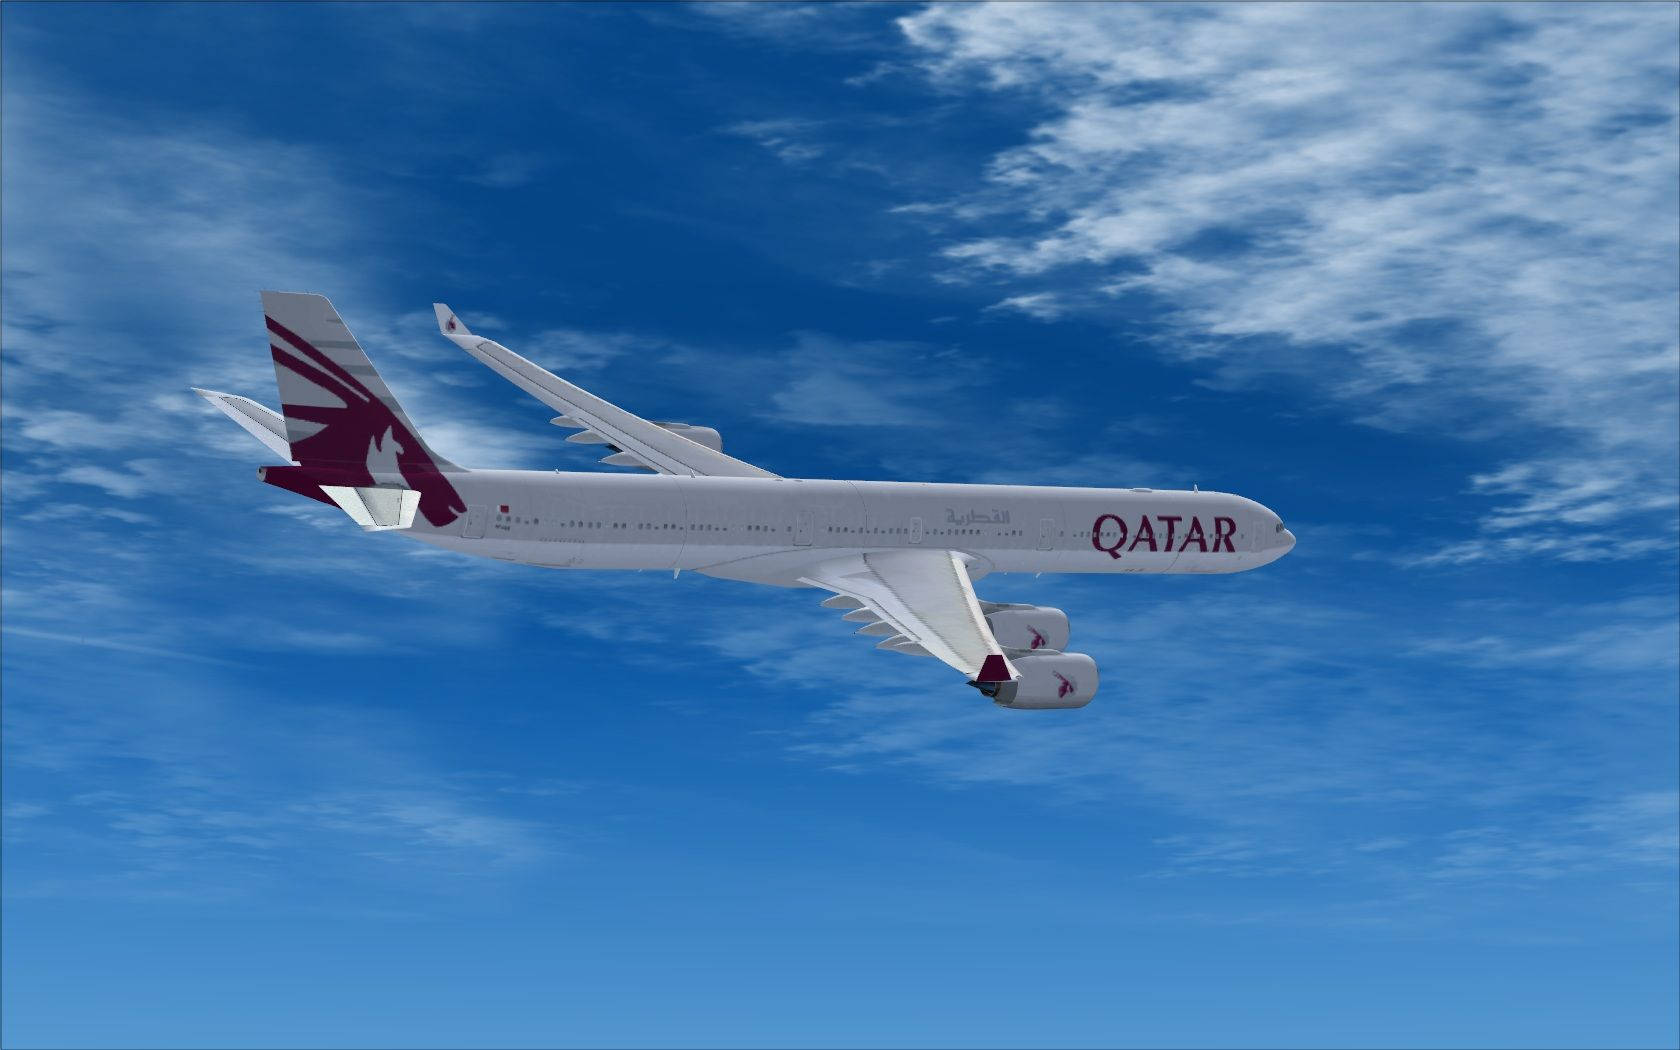 Qatar Airways In Flight Amidst Blue Sky Background